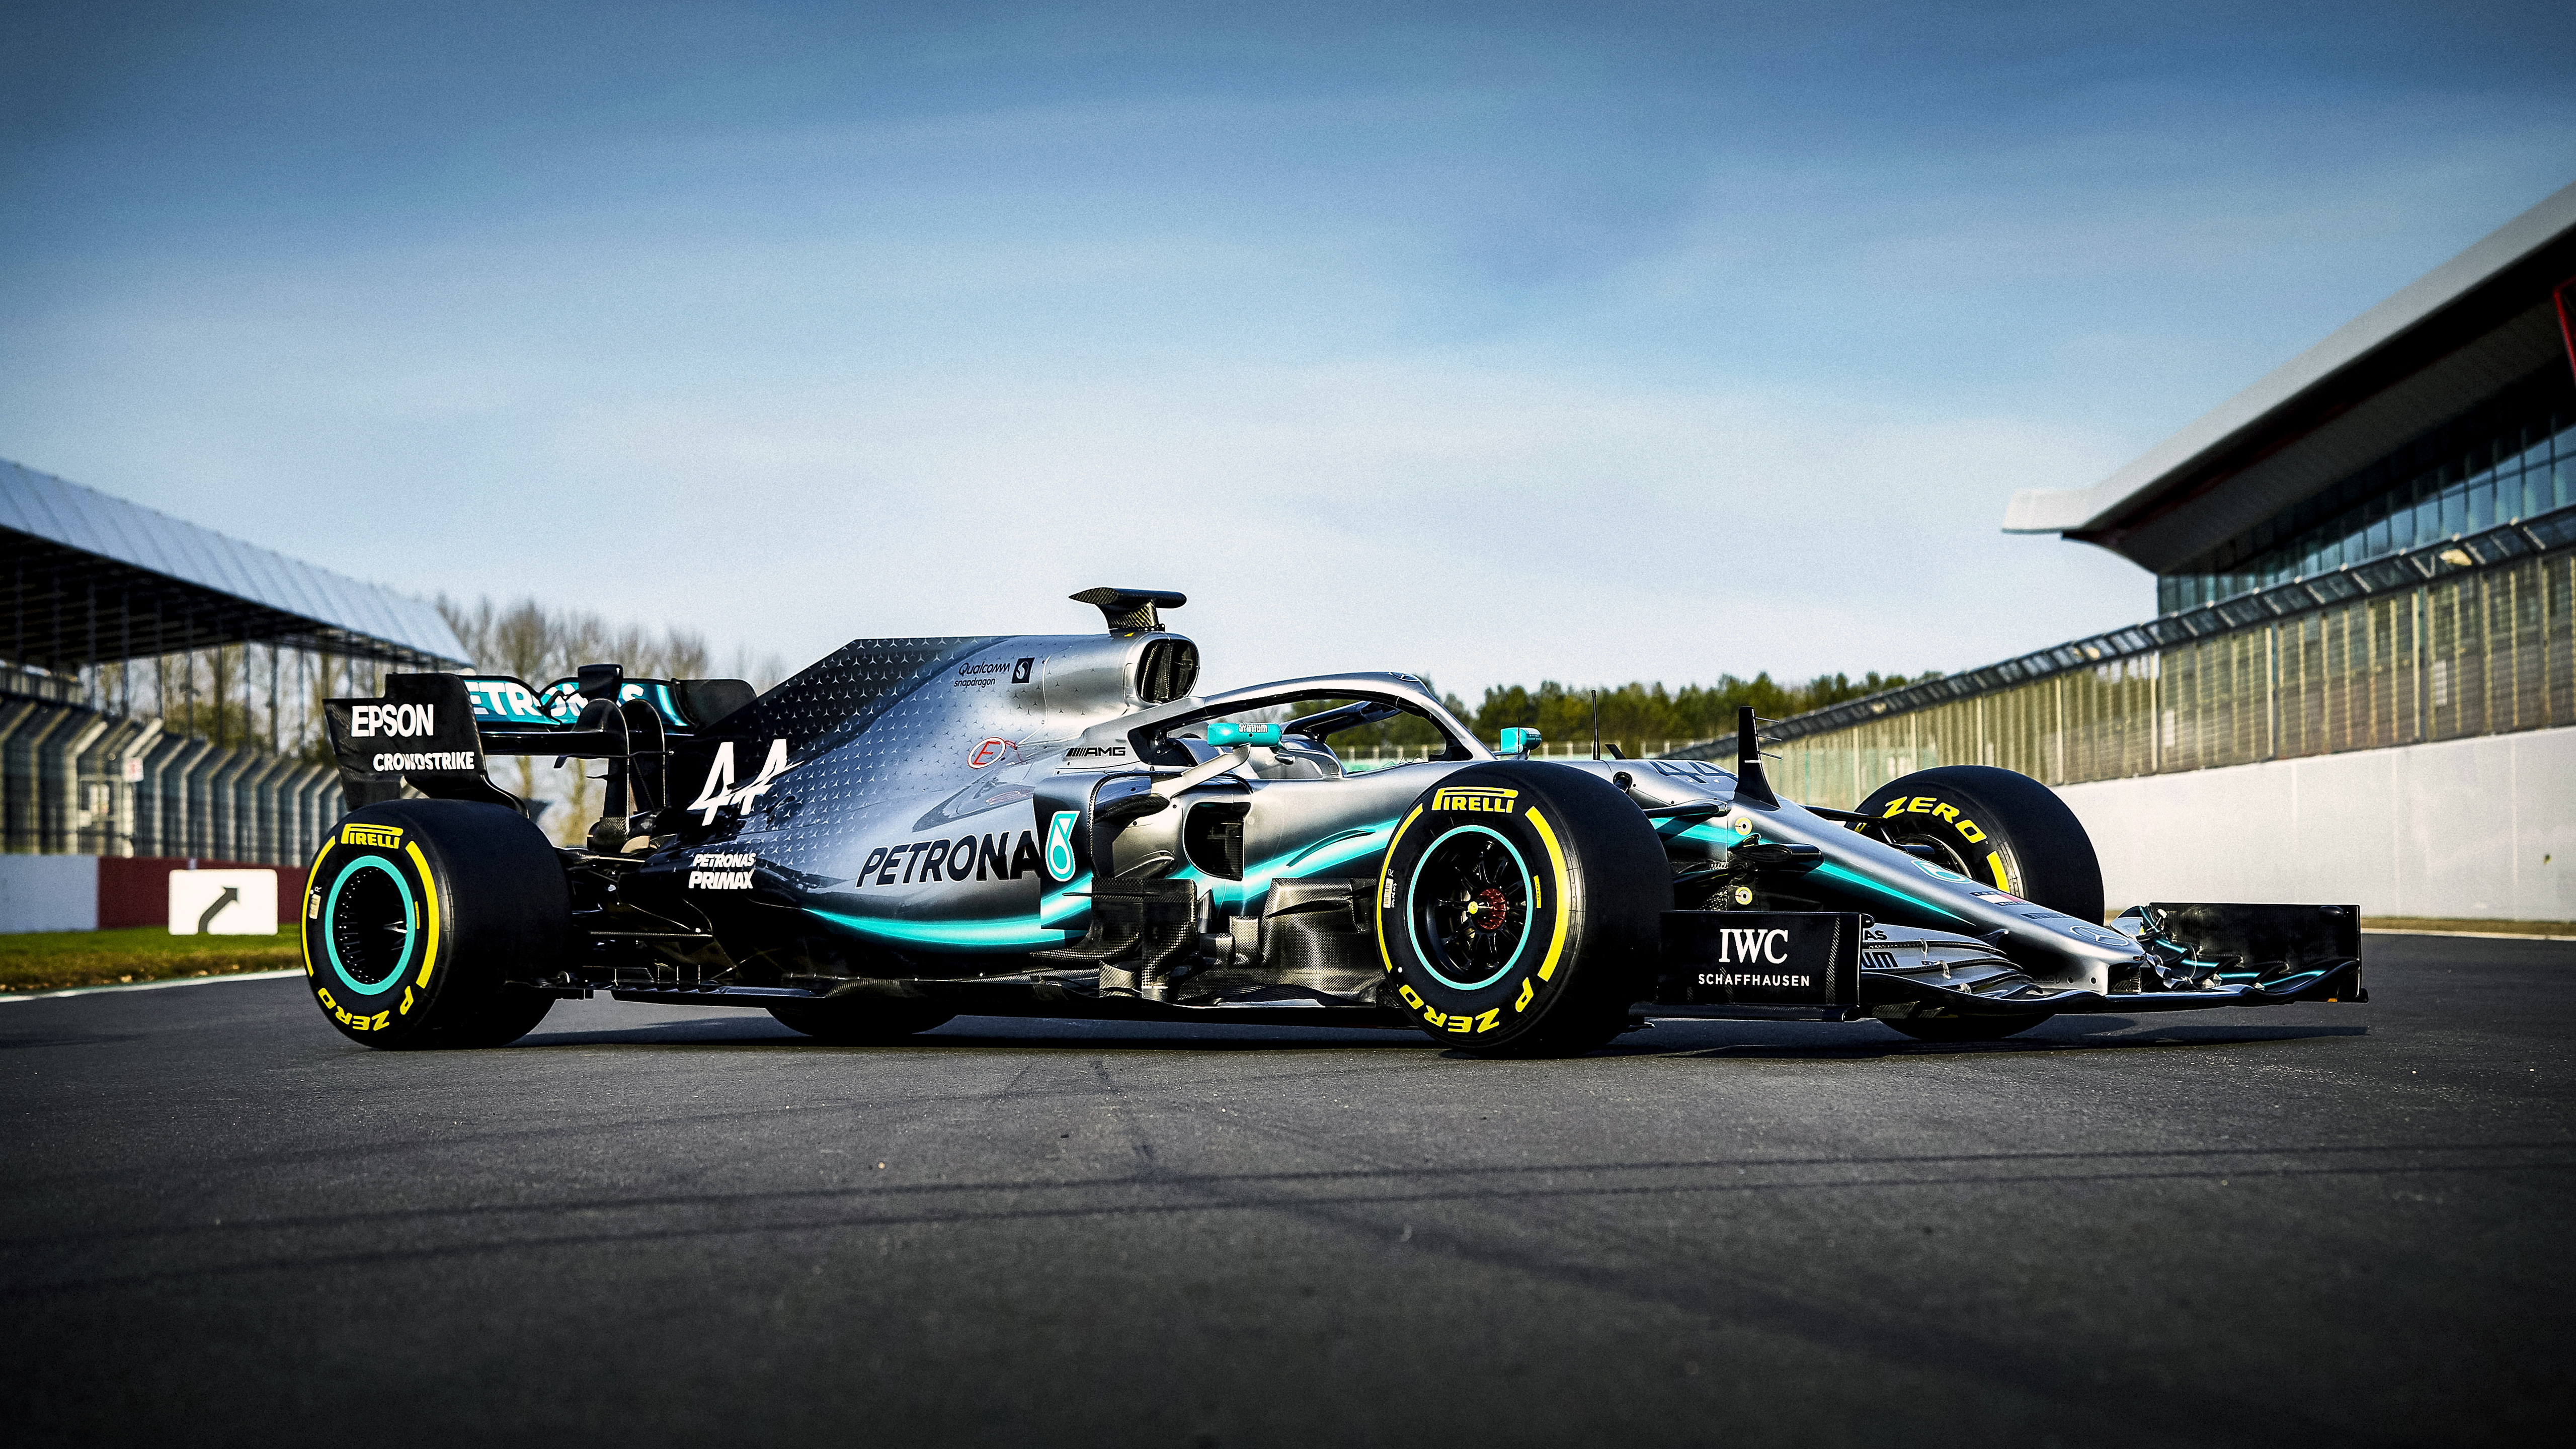 Mercedes F1 2019 Car , HD Wallpaper & Backgrounds